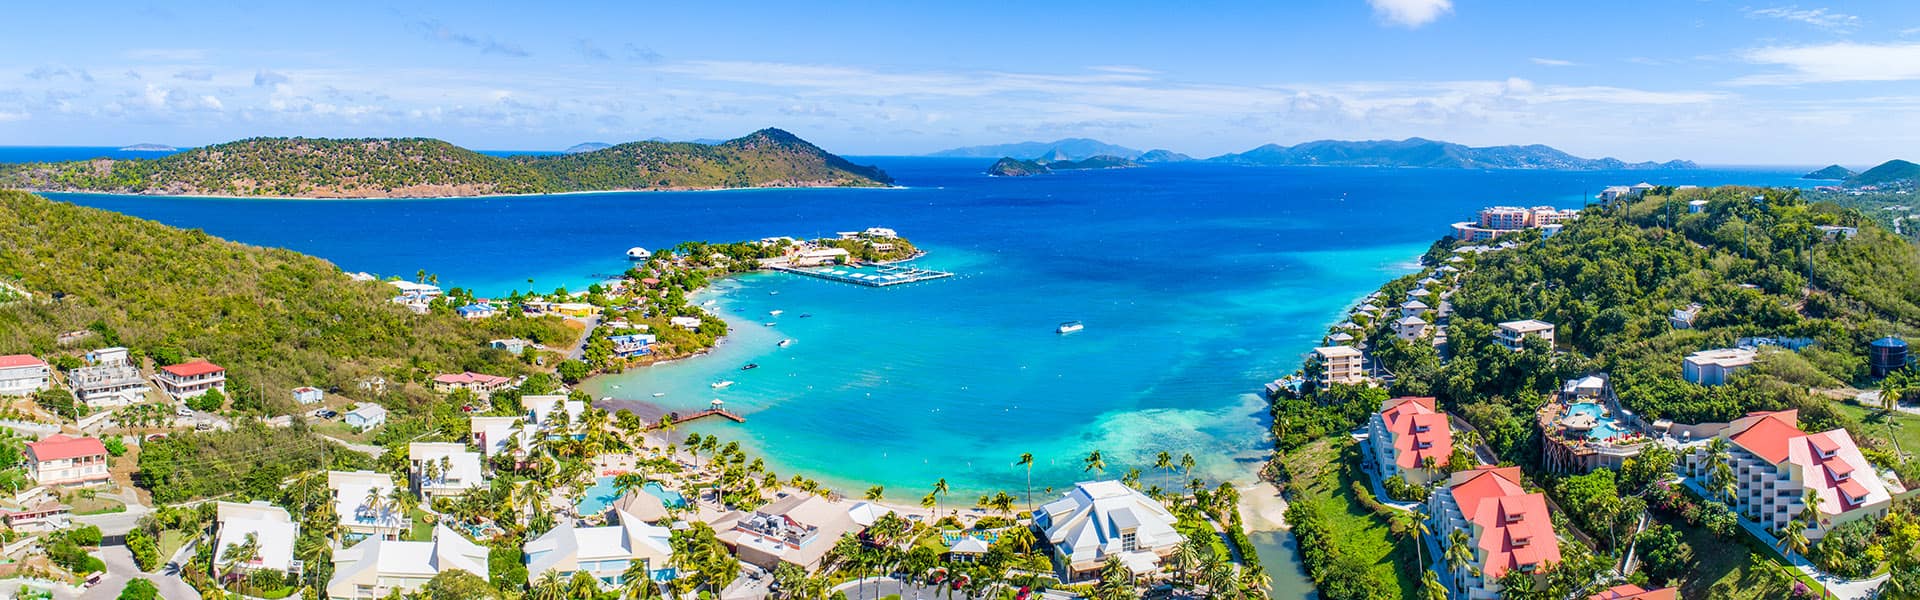 האיים הקריביים: גרייט סטירופ קיי והרפובליקה הדומיניקנית